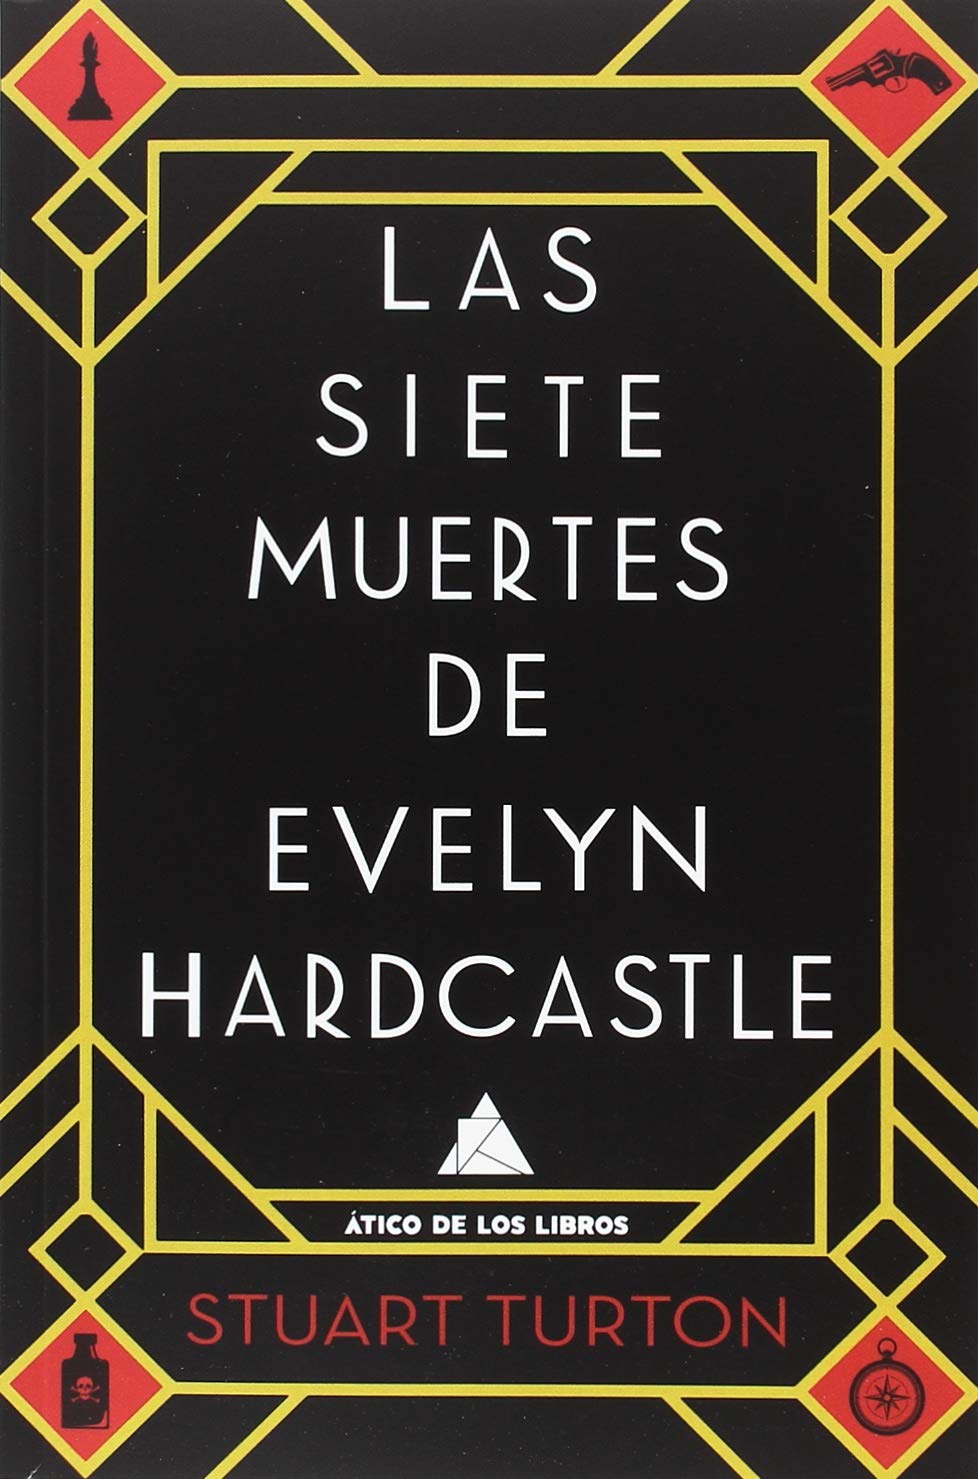 Las siete muertes de Evelyn Hardcastle, de Stuart Turton